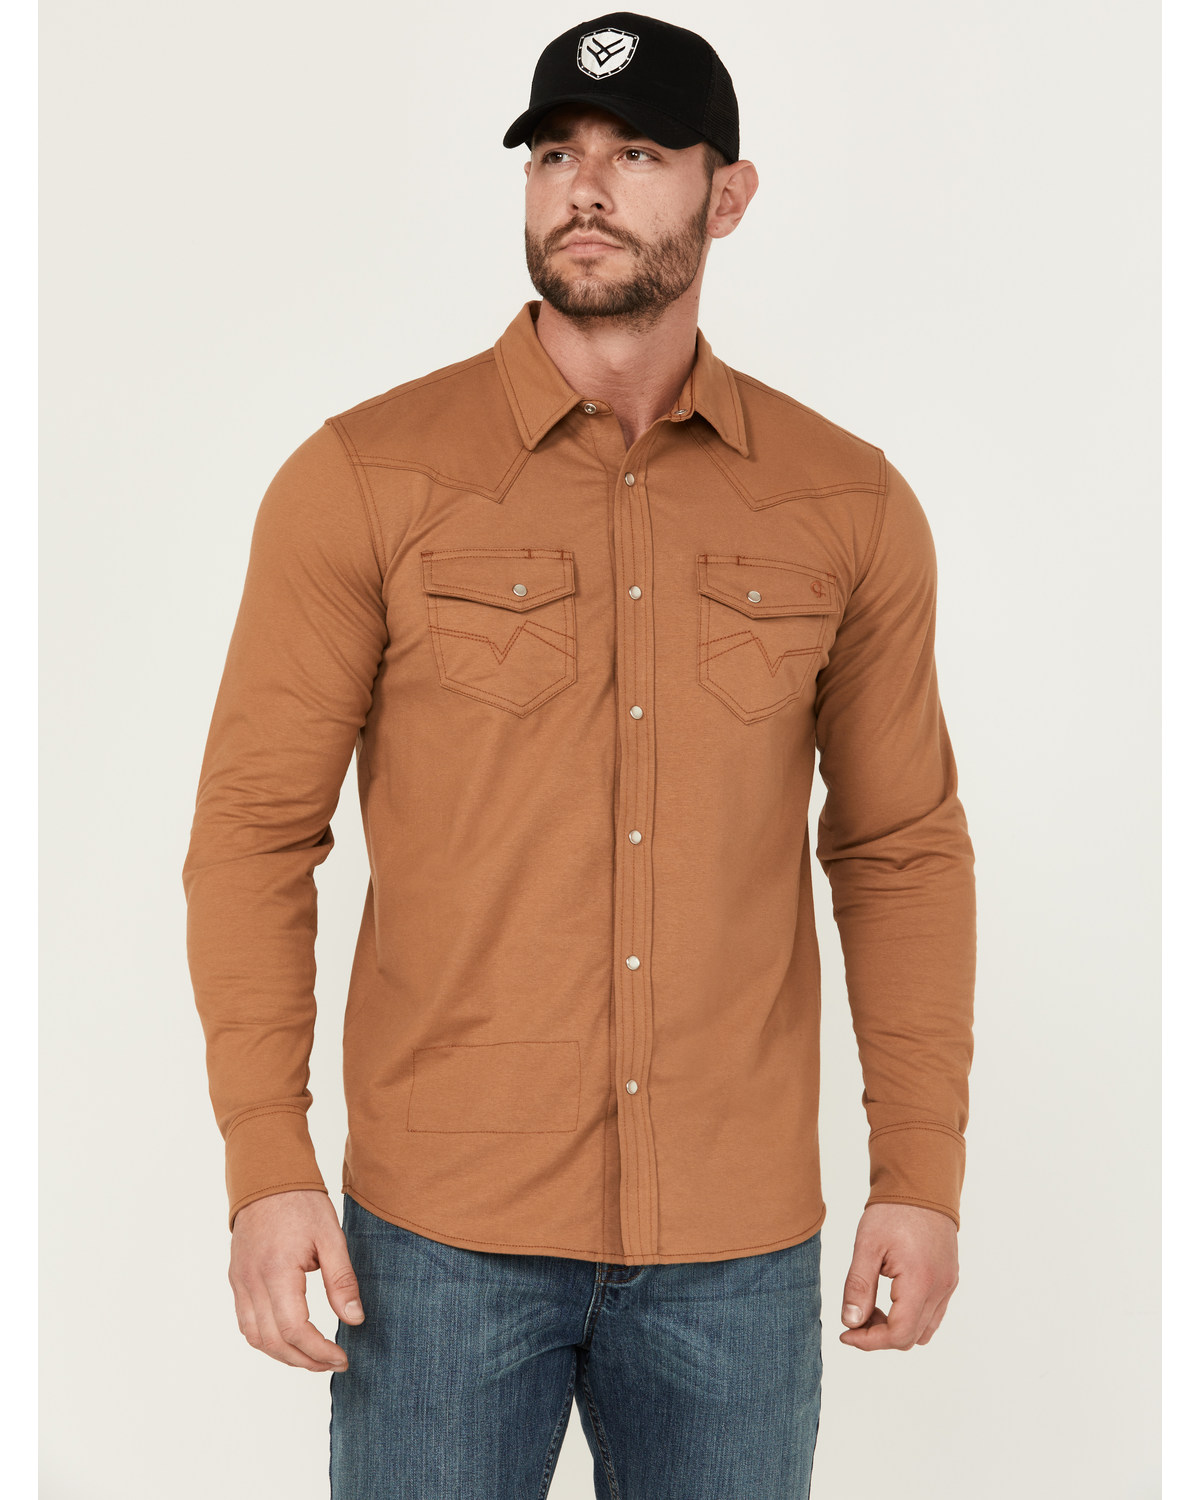 Cody James Men's FR Lightweight Solid Long Sleeve Snap Work Shirt